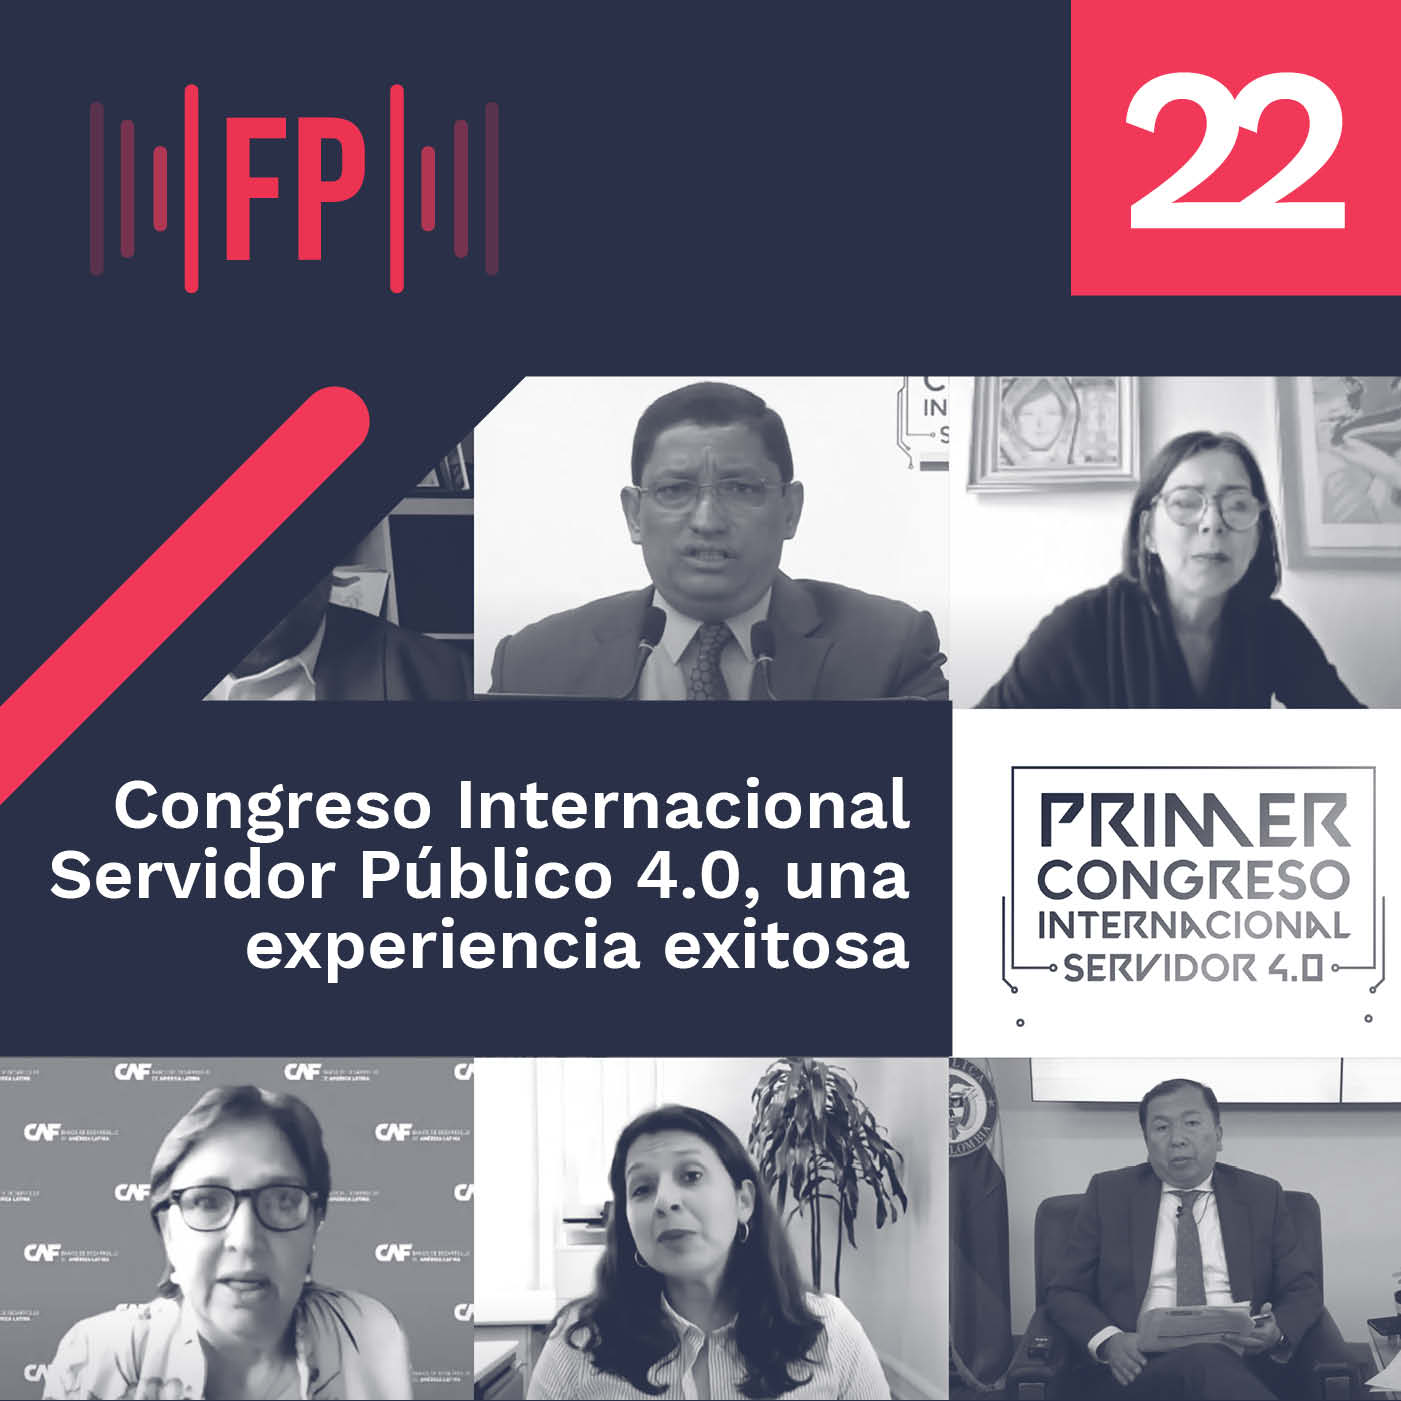 Congreso Internacional Servidor Público 4.0, una experiencia exitosa